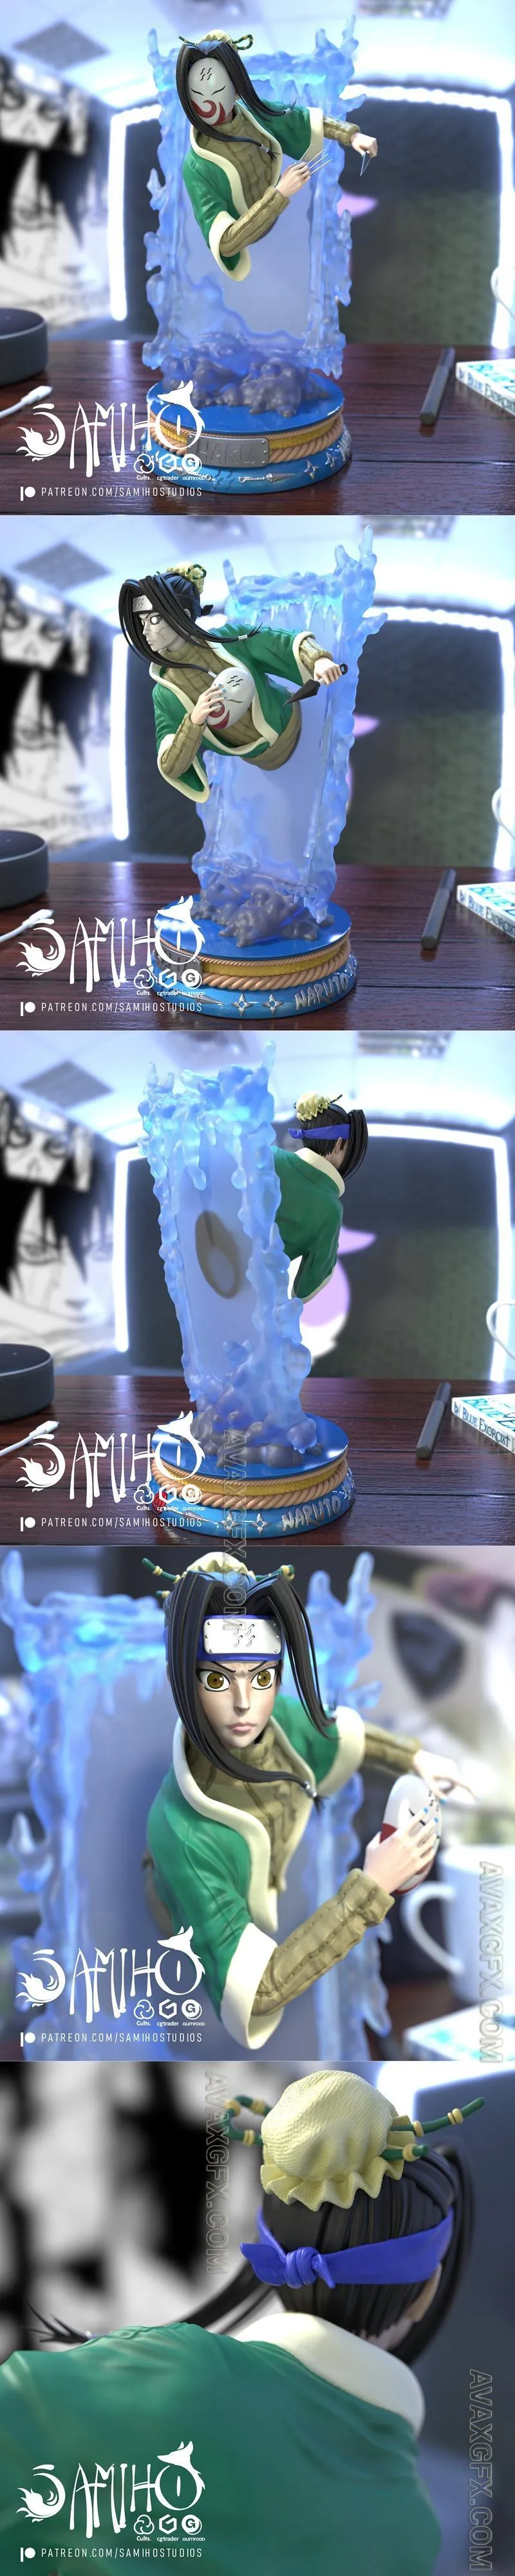 Samiho Studios - Haku Crystal Mirror - STL 3D Model